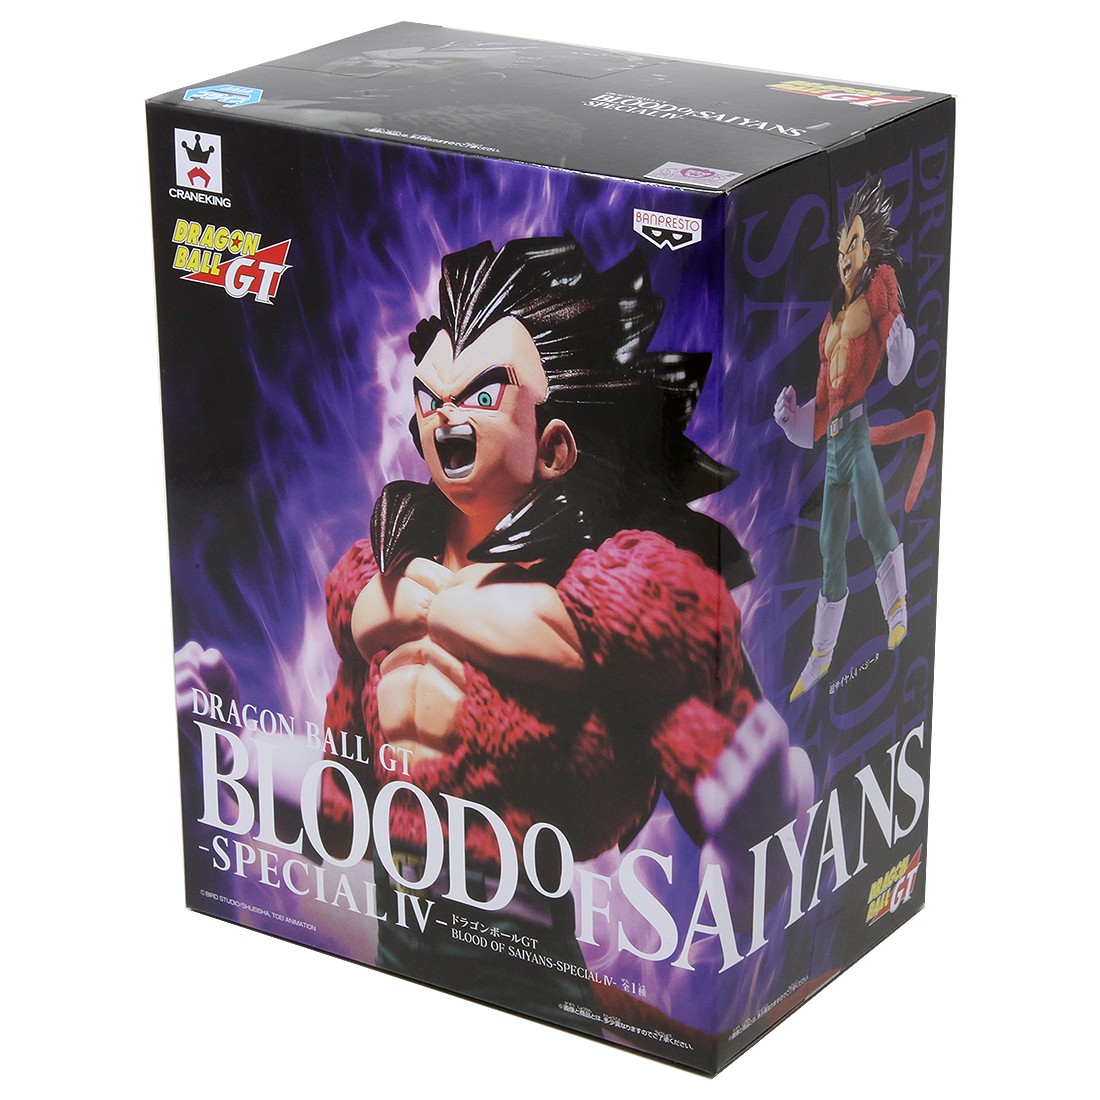  Banpresto 39415 Dragon Ball GT - Blood of Saiyans